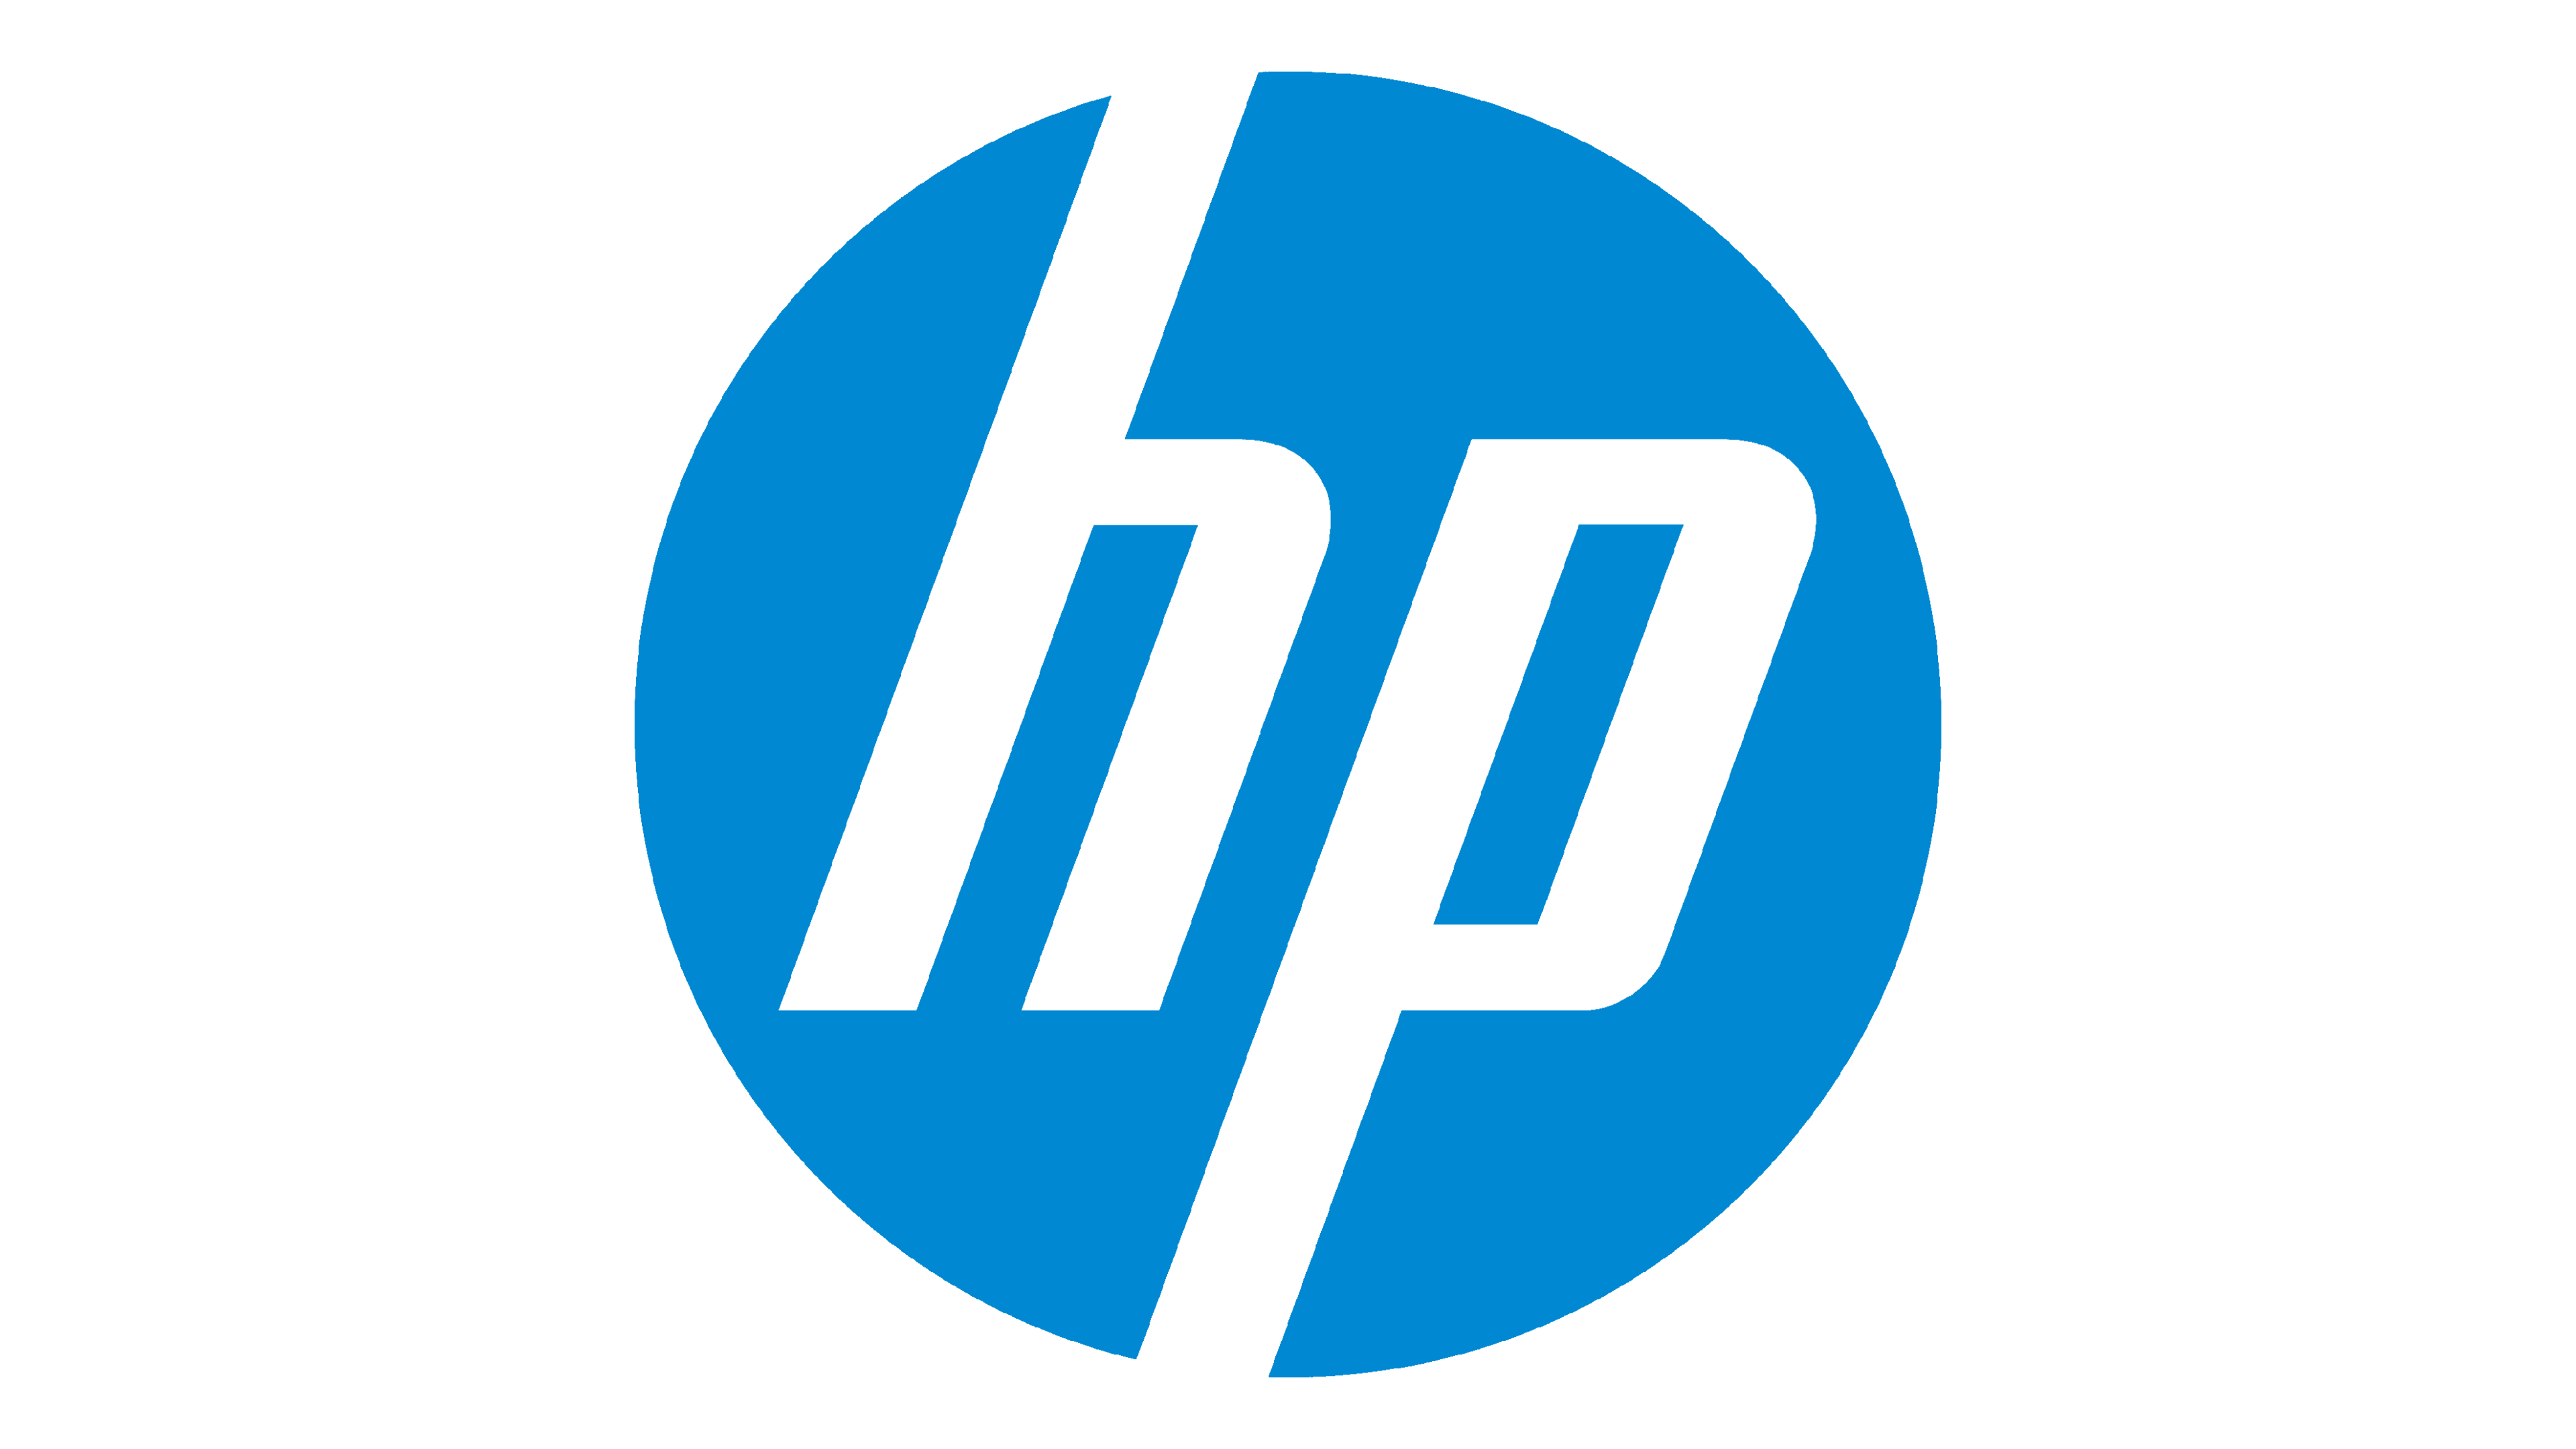 Hewlett Packard Computer